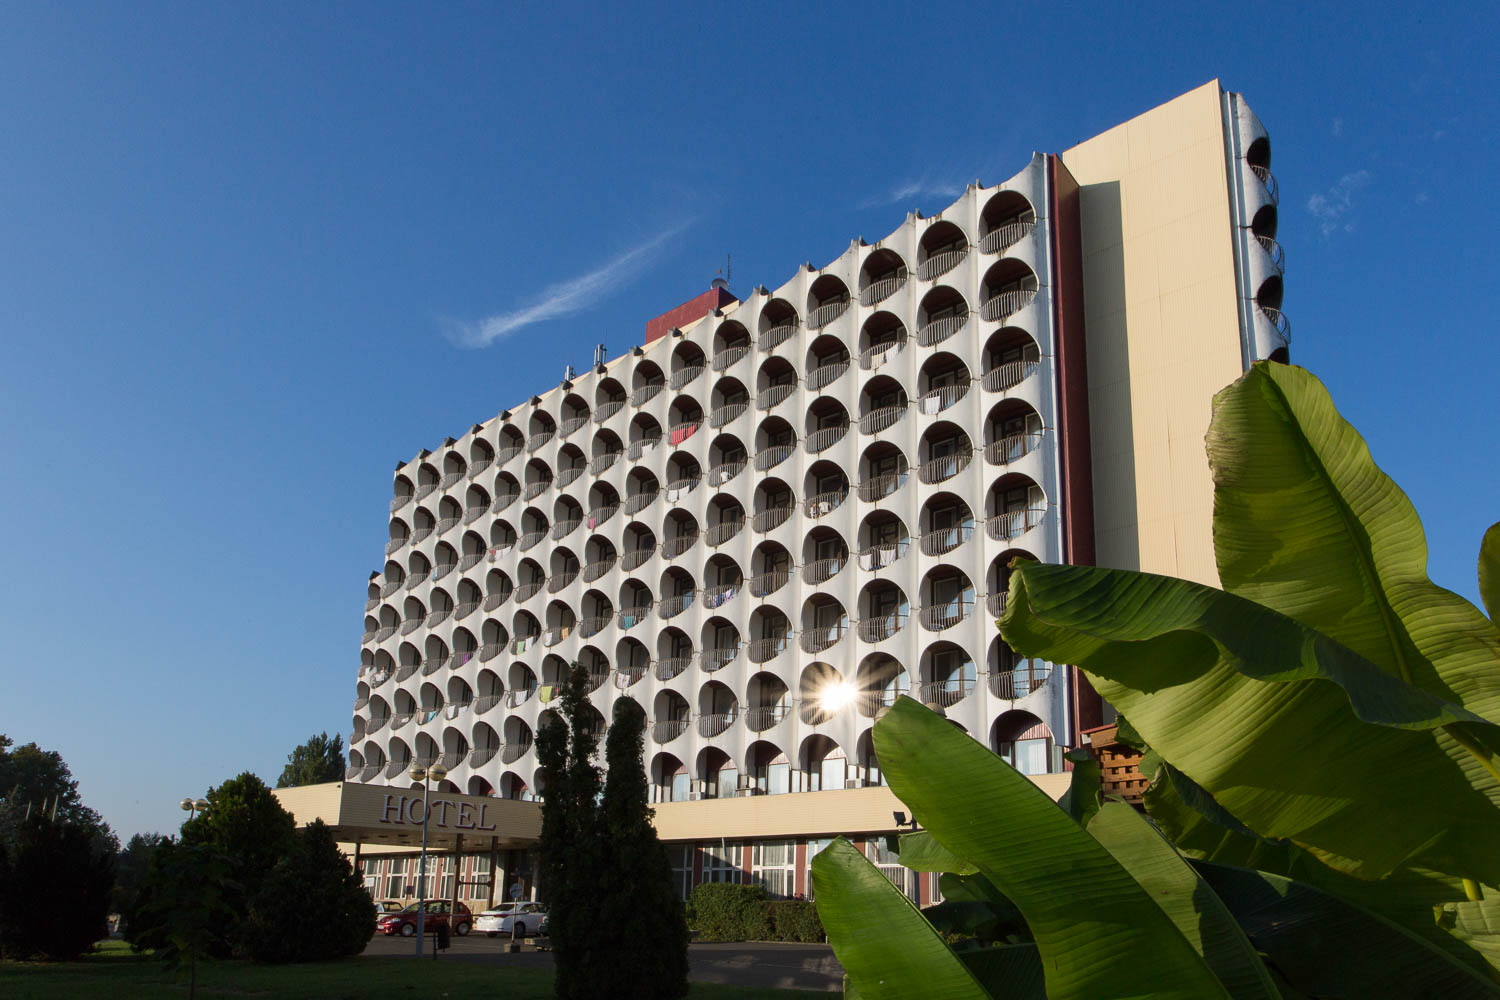 Bezárt a legendás siófoki Hotel Ezüstpart